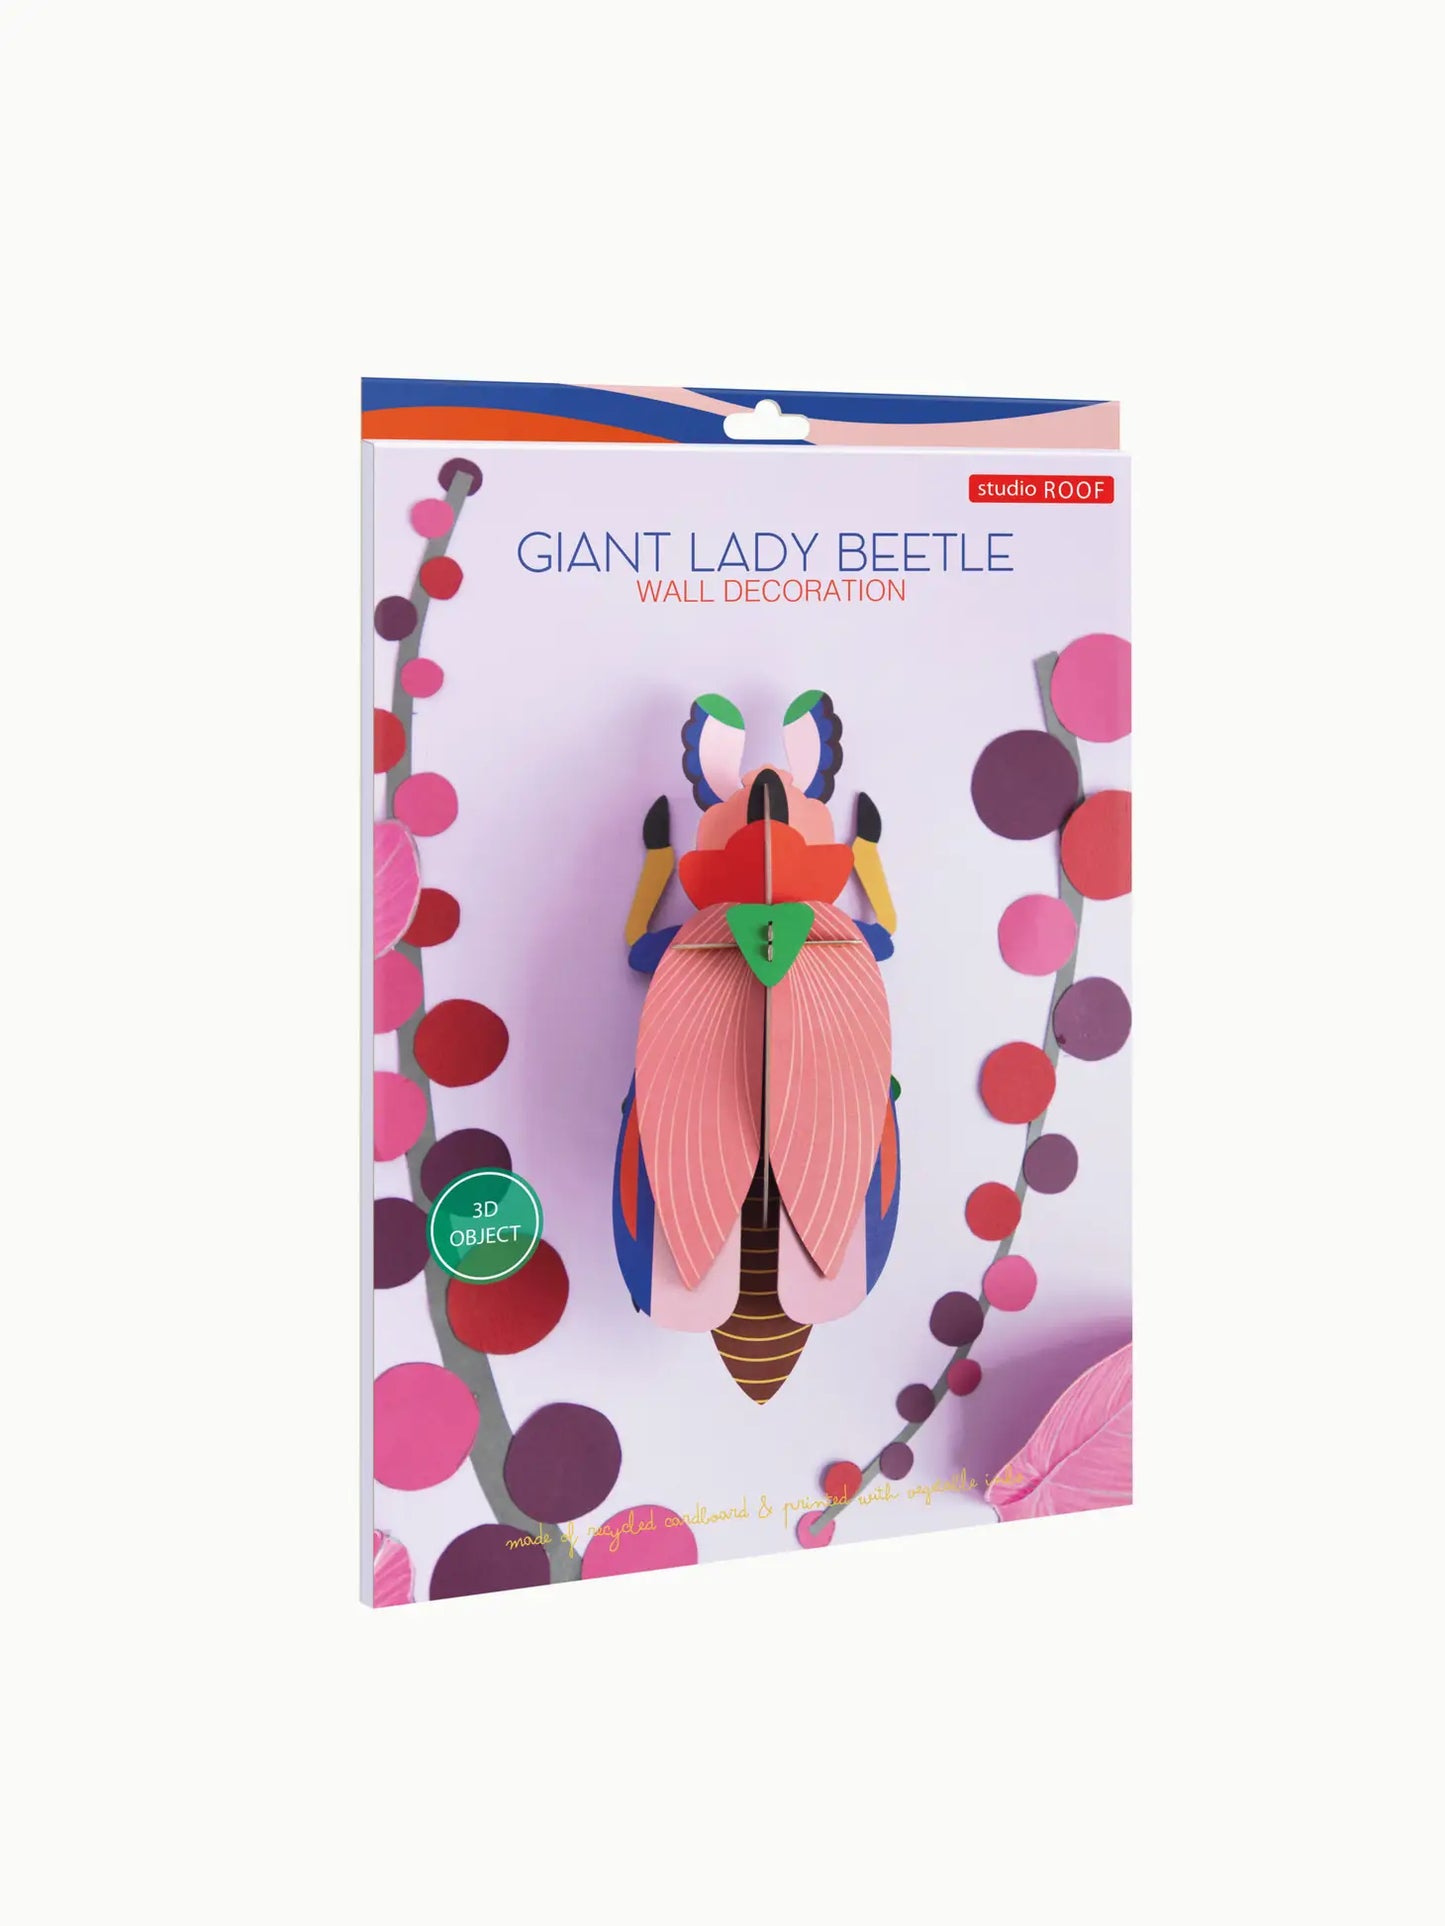 Giant Lady Beetle